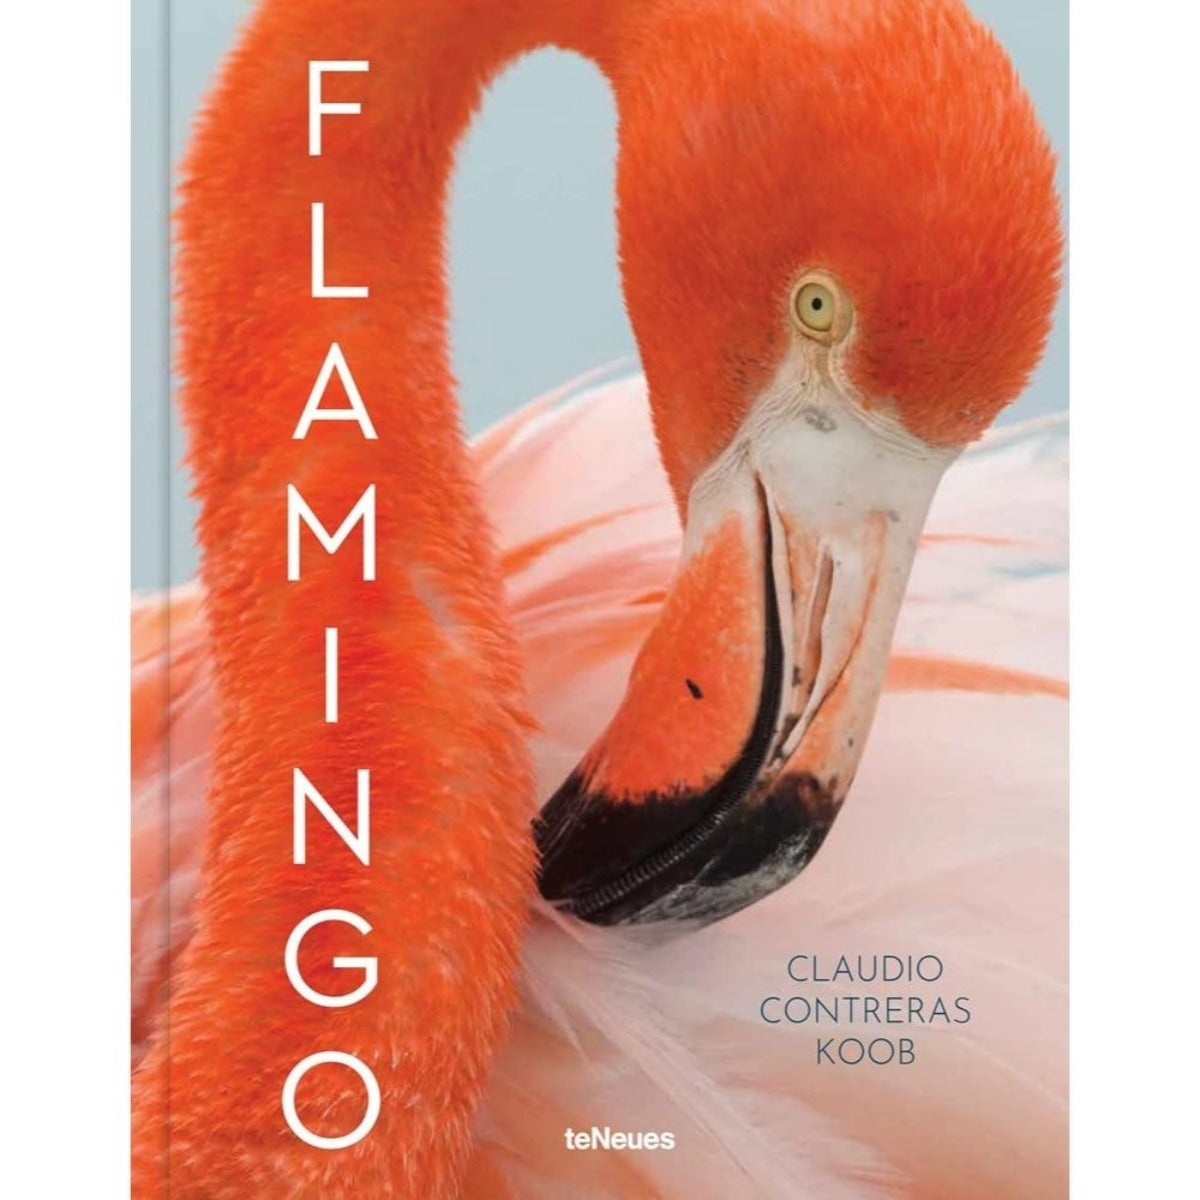 Flamingo by Claudio Contreras Koob